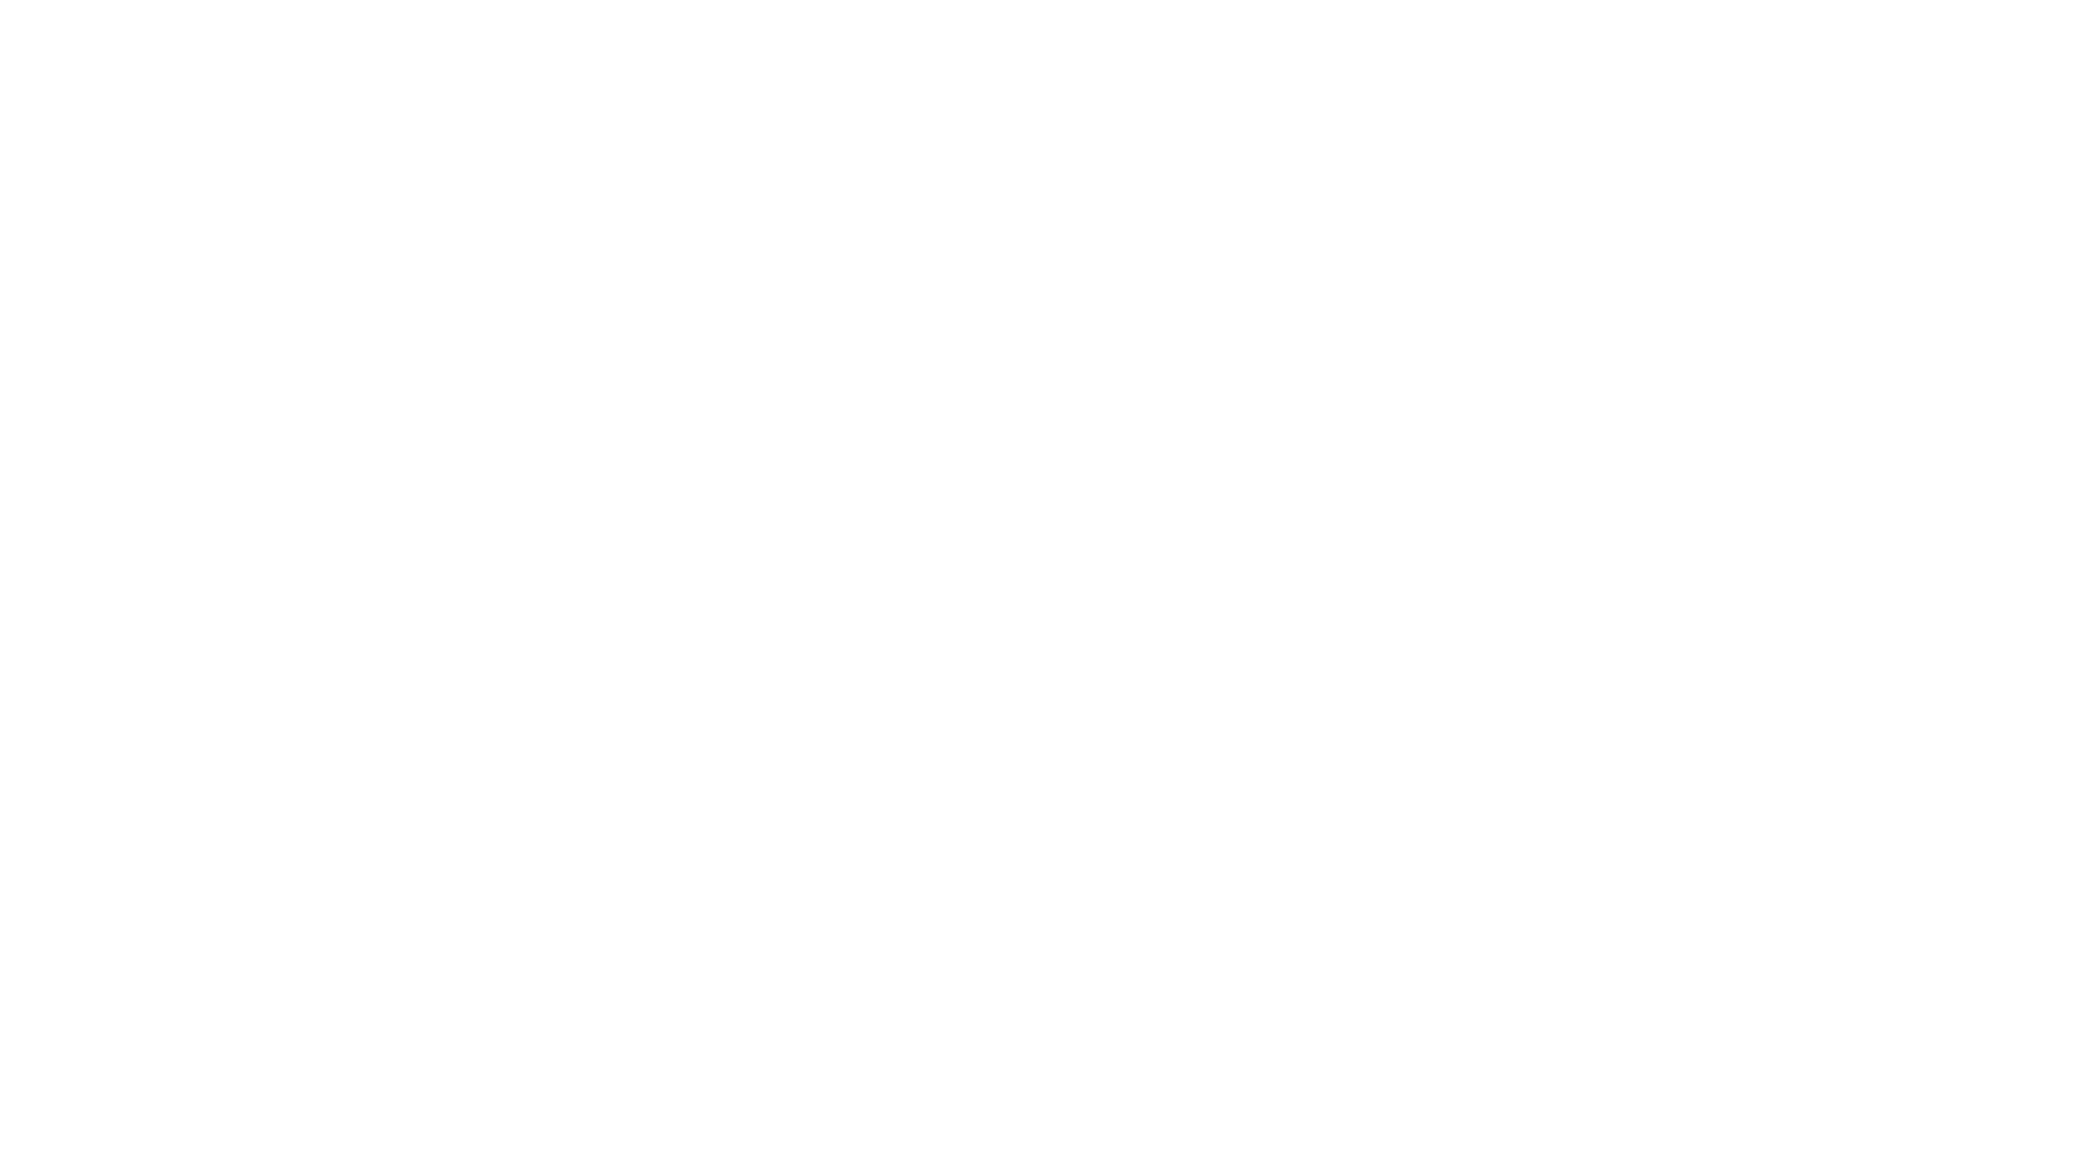 Martella beauty salon